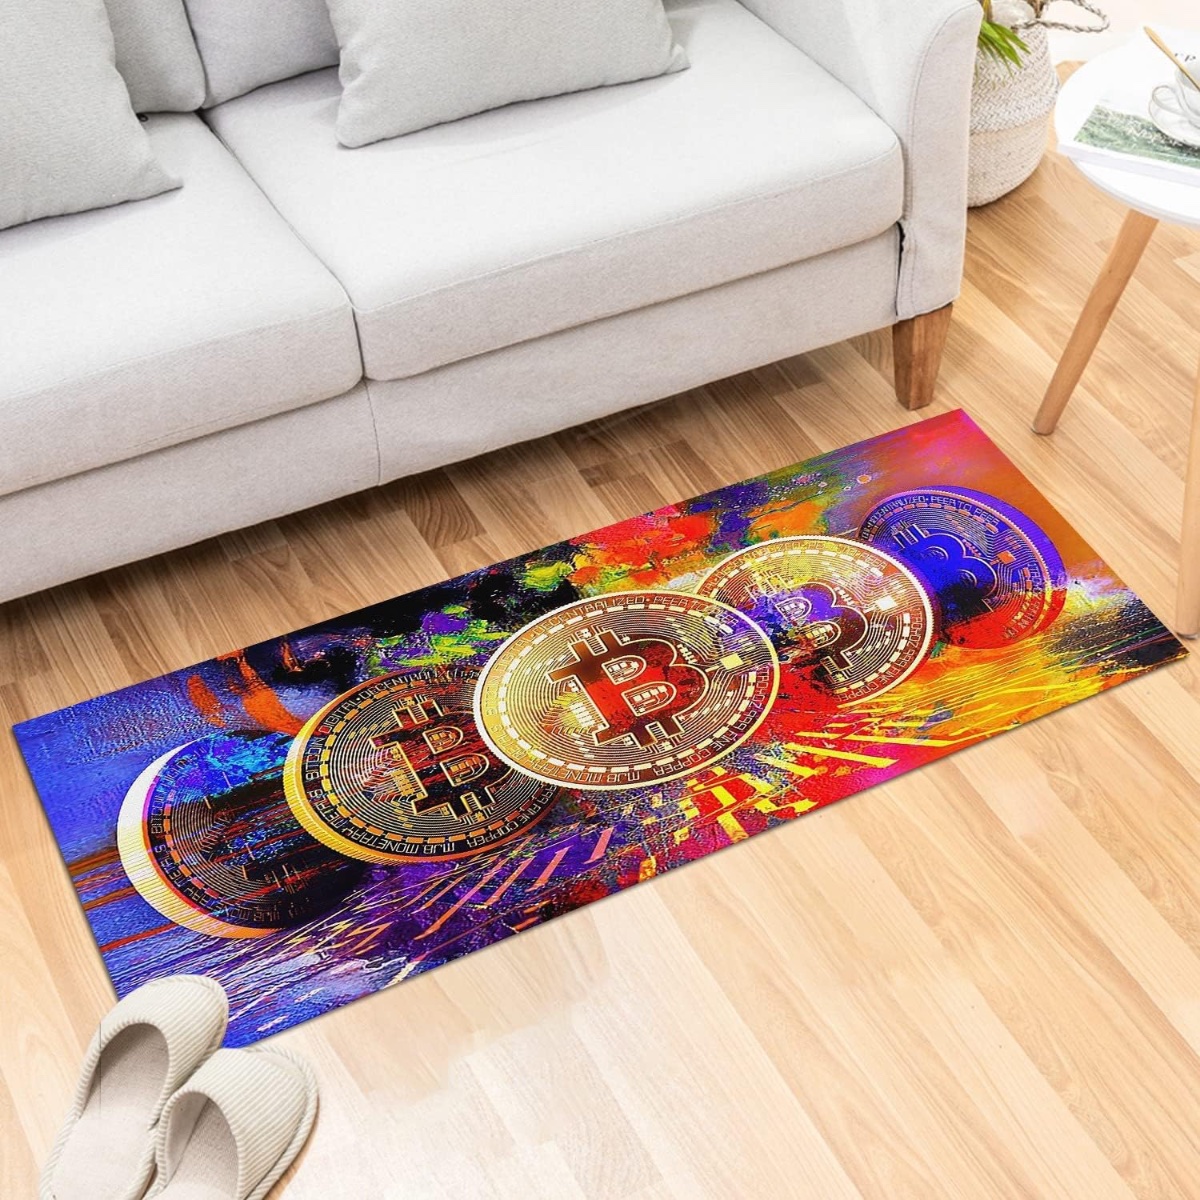 Bitcoin-themed area rug